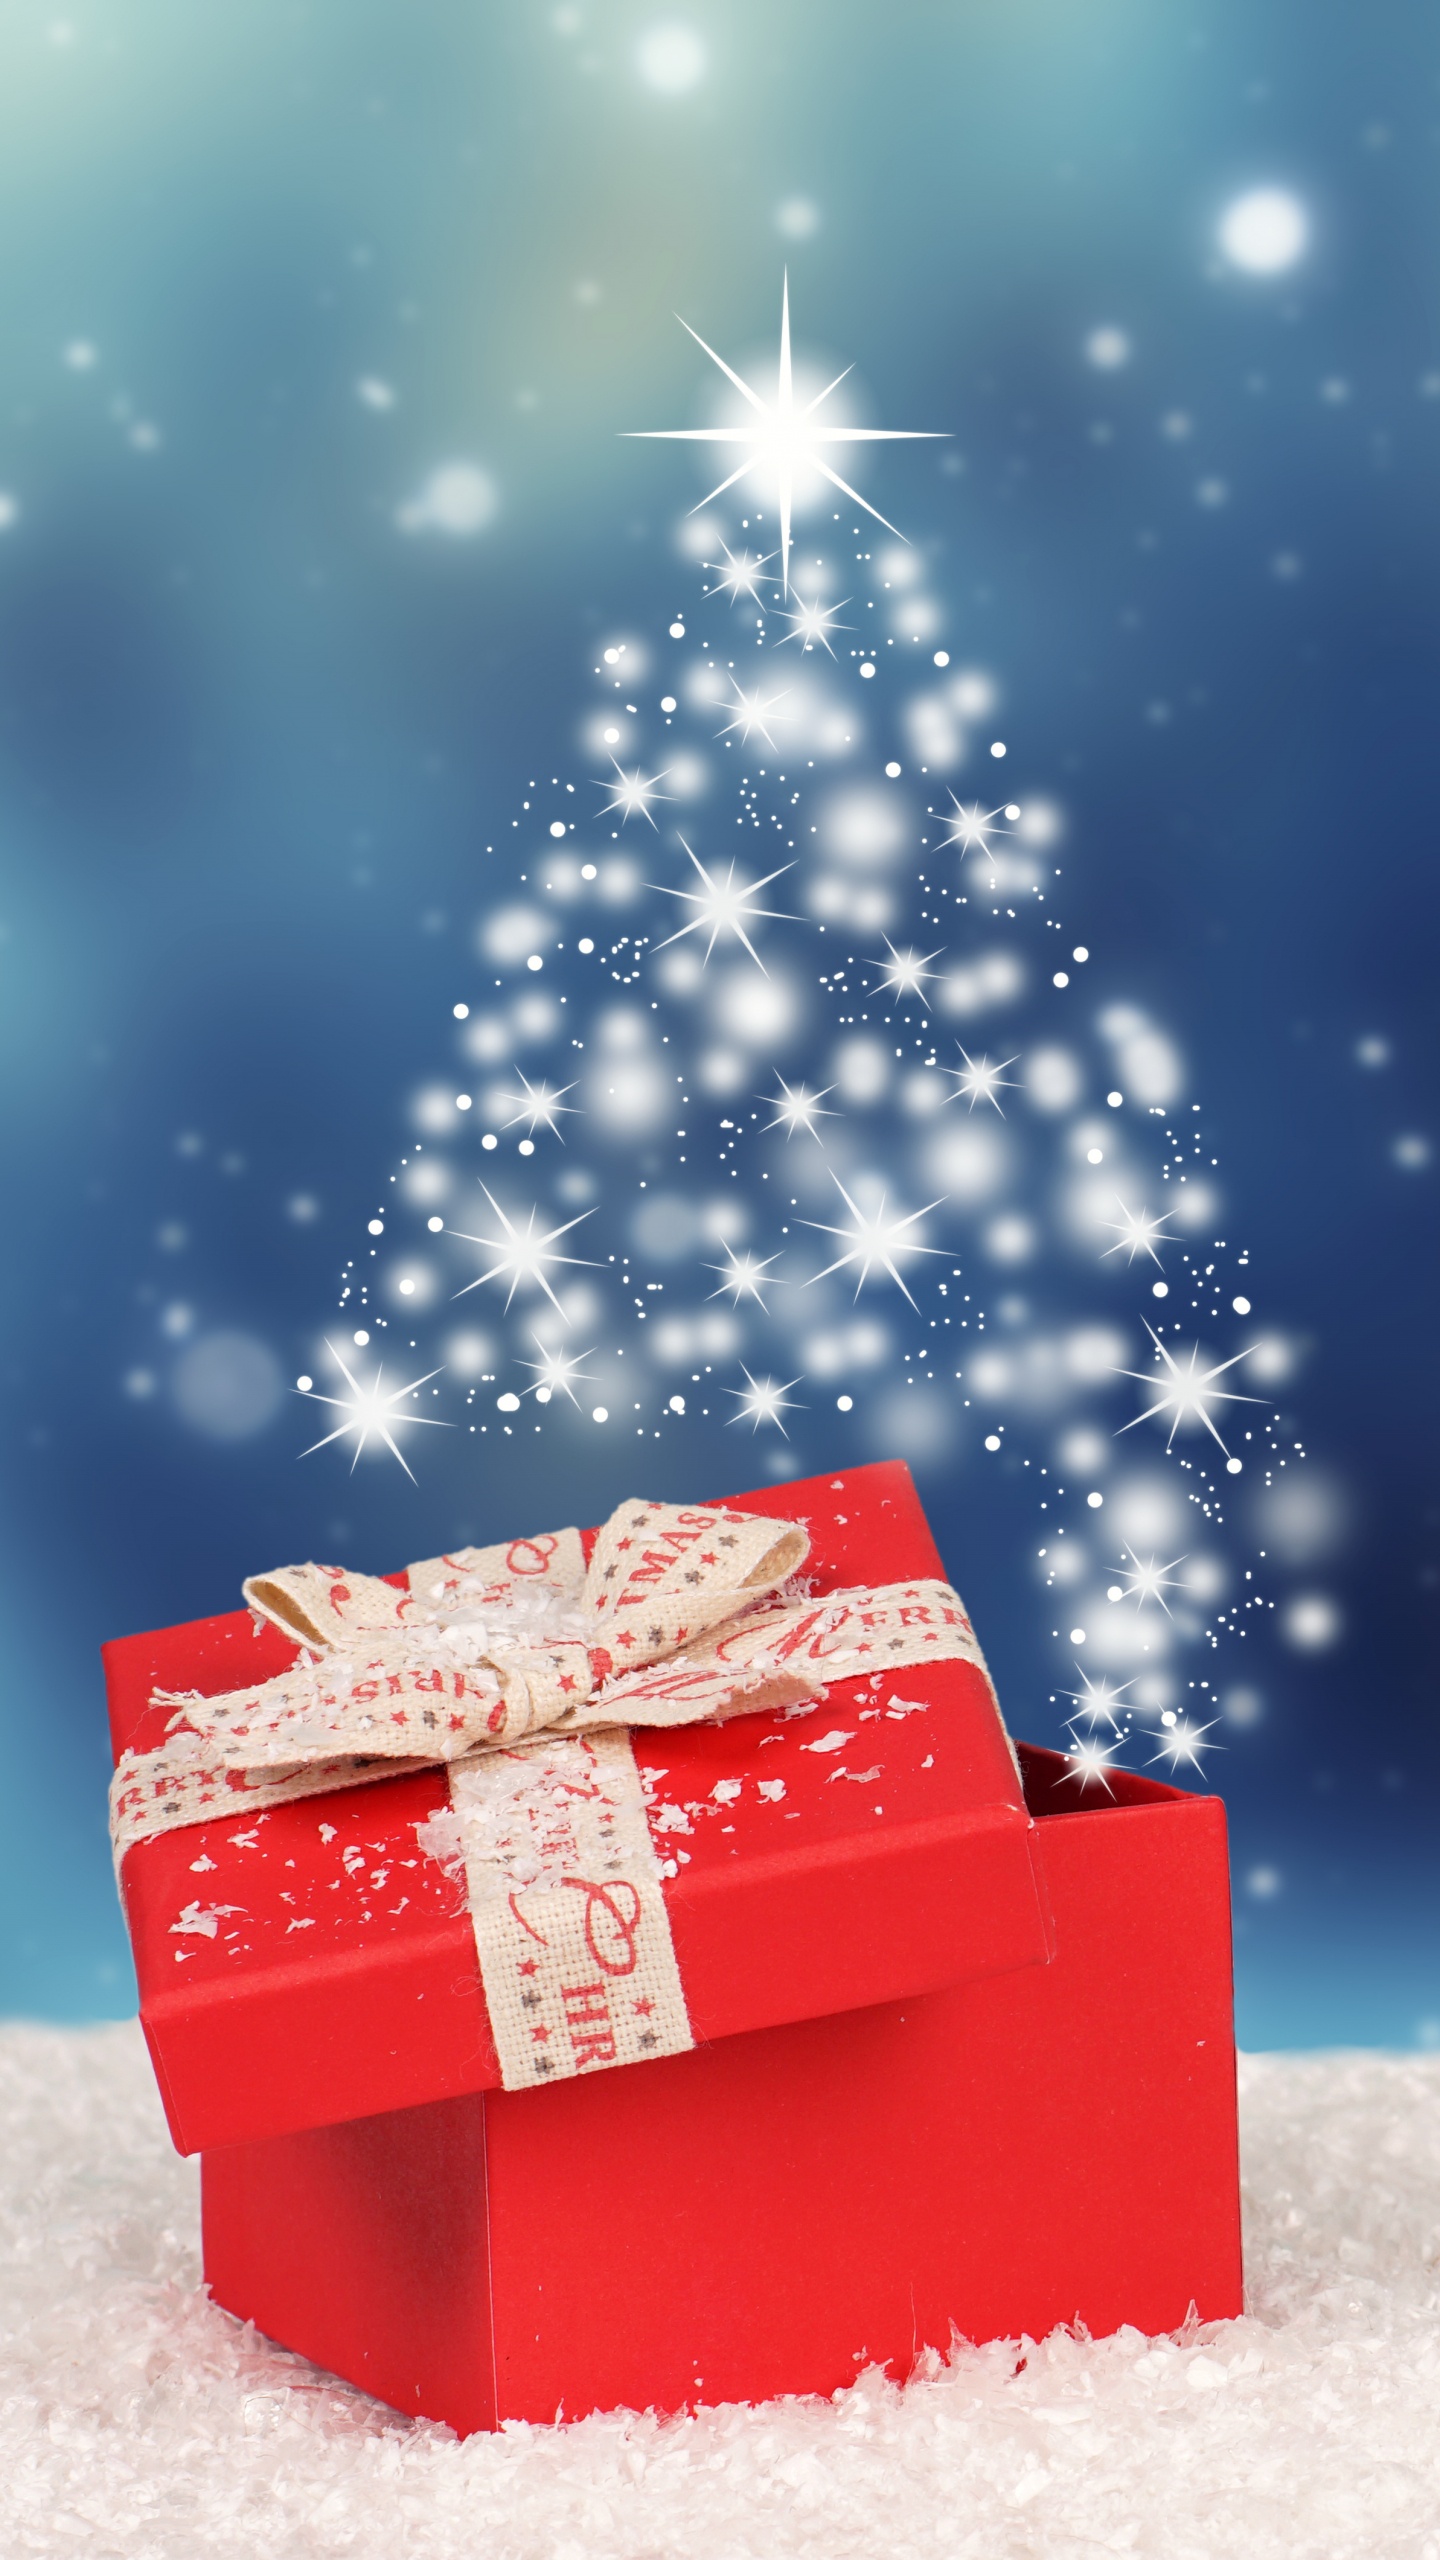 圣诞节那天, 冬天, 圣诞节, 圣诞树, 圣诞前夕 壁纸 1440x2560 允许